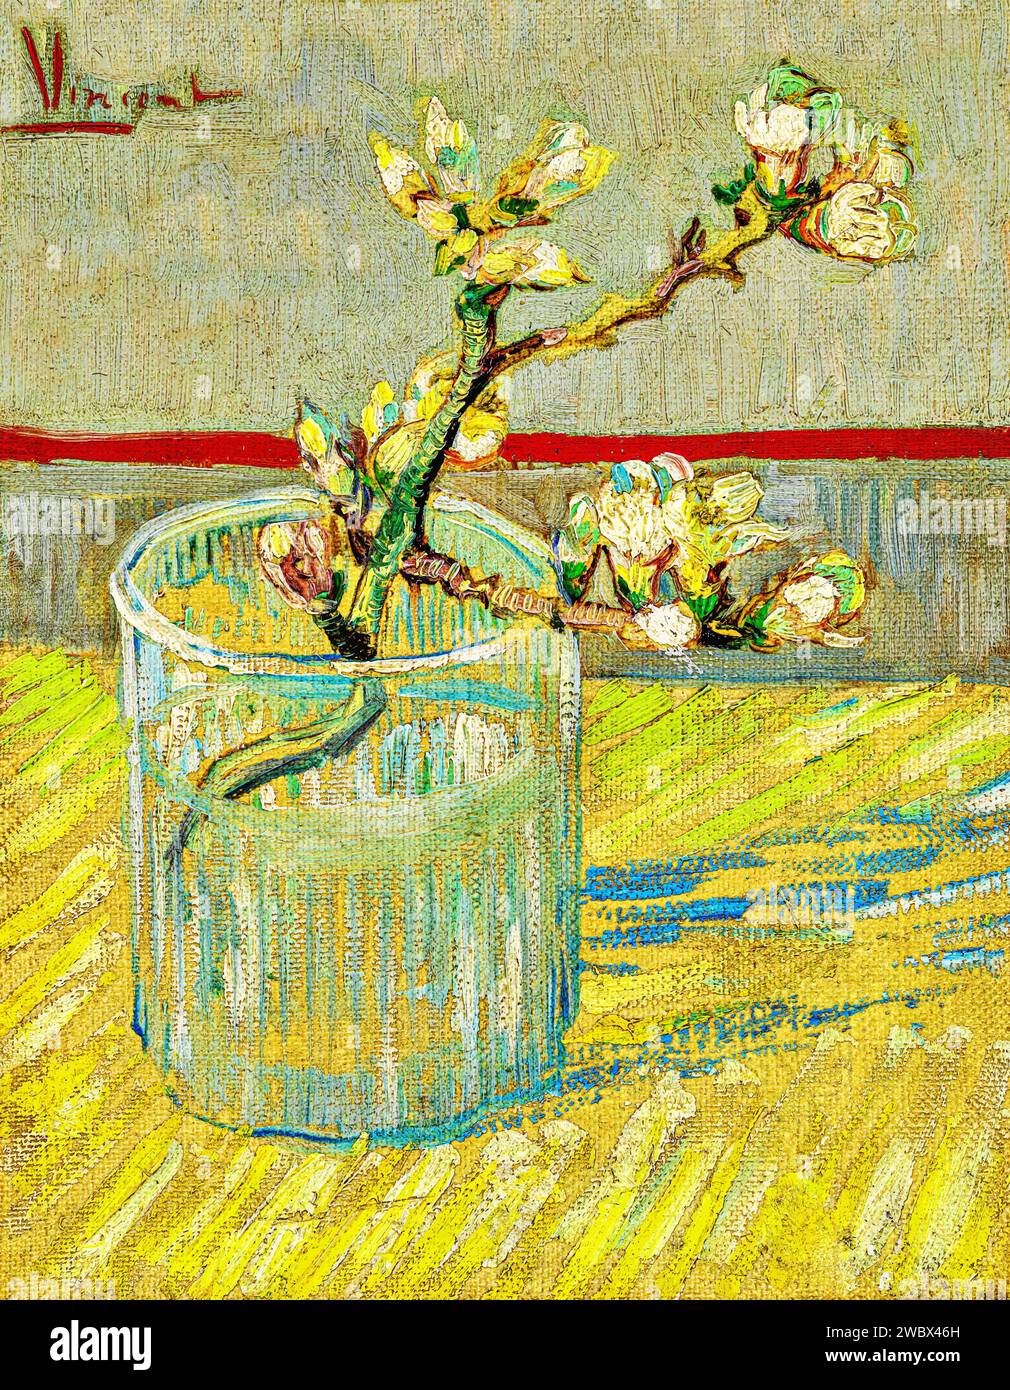 Branche d'amande fleurie dans un verre 1888 (peinture) par l'artiste Gogh, Vincent van (1853-90) Dutc. Illustration de Vecteur